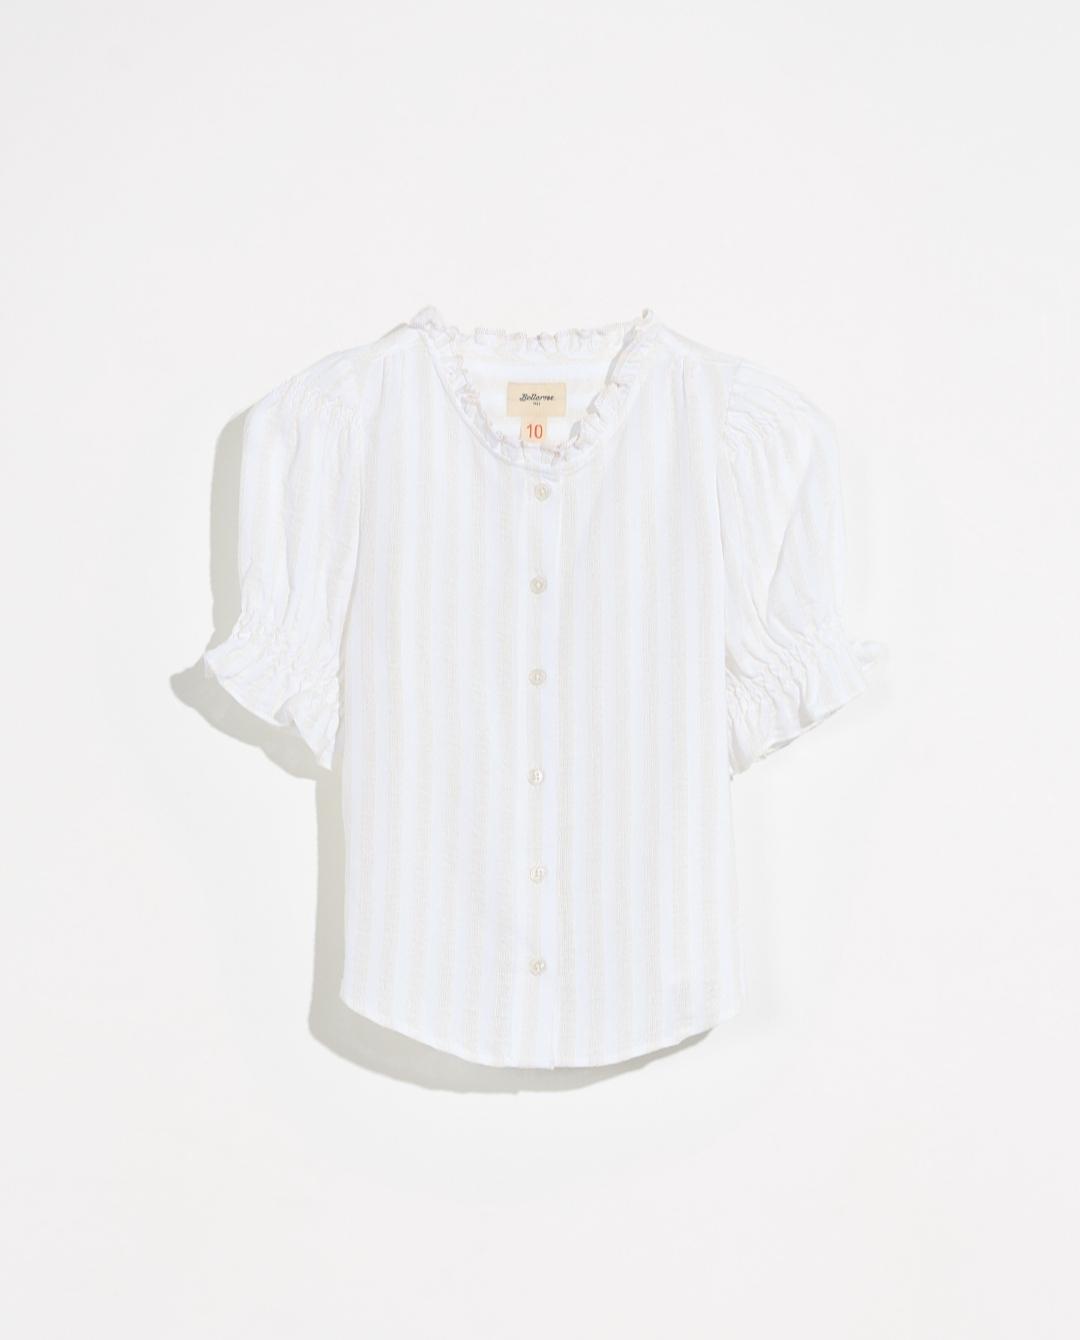 Bellerose,ARRAS SHIRT,Blusa blanca estilo romántico manga farol